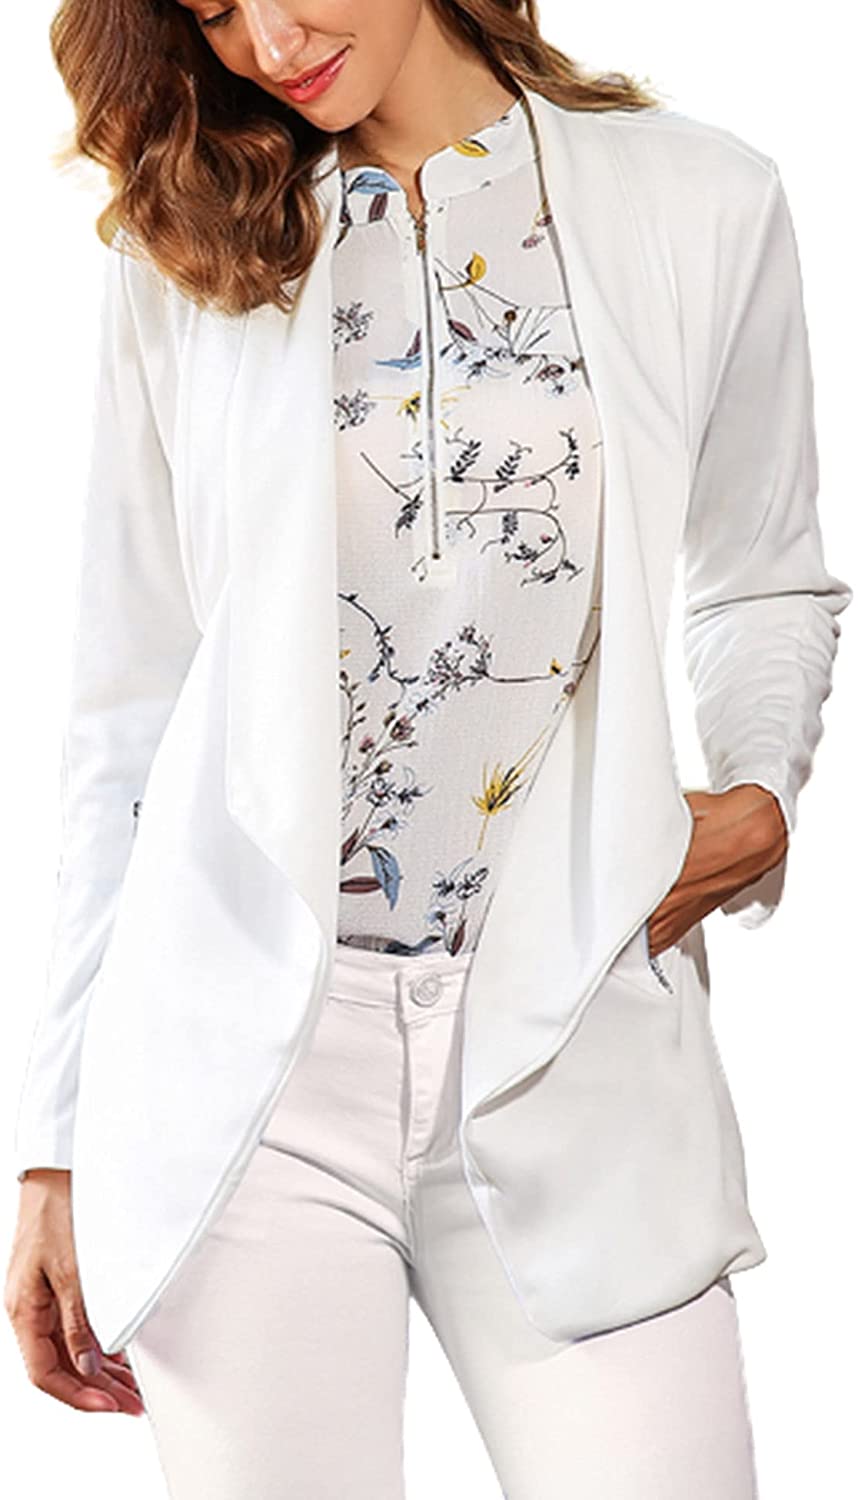 ELESOL Blazer Jackets for Women Long Sleeve Open Front Business Suit Jackets Boyfriend Blazer with Zipper Pockets S-XXL 